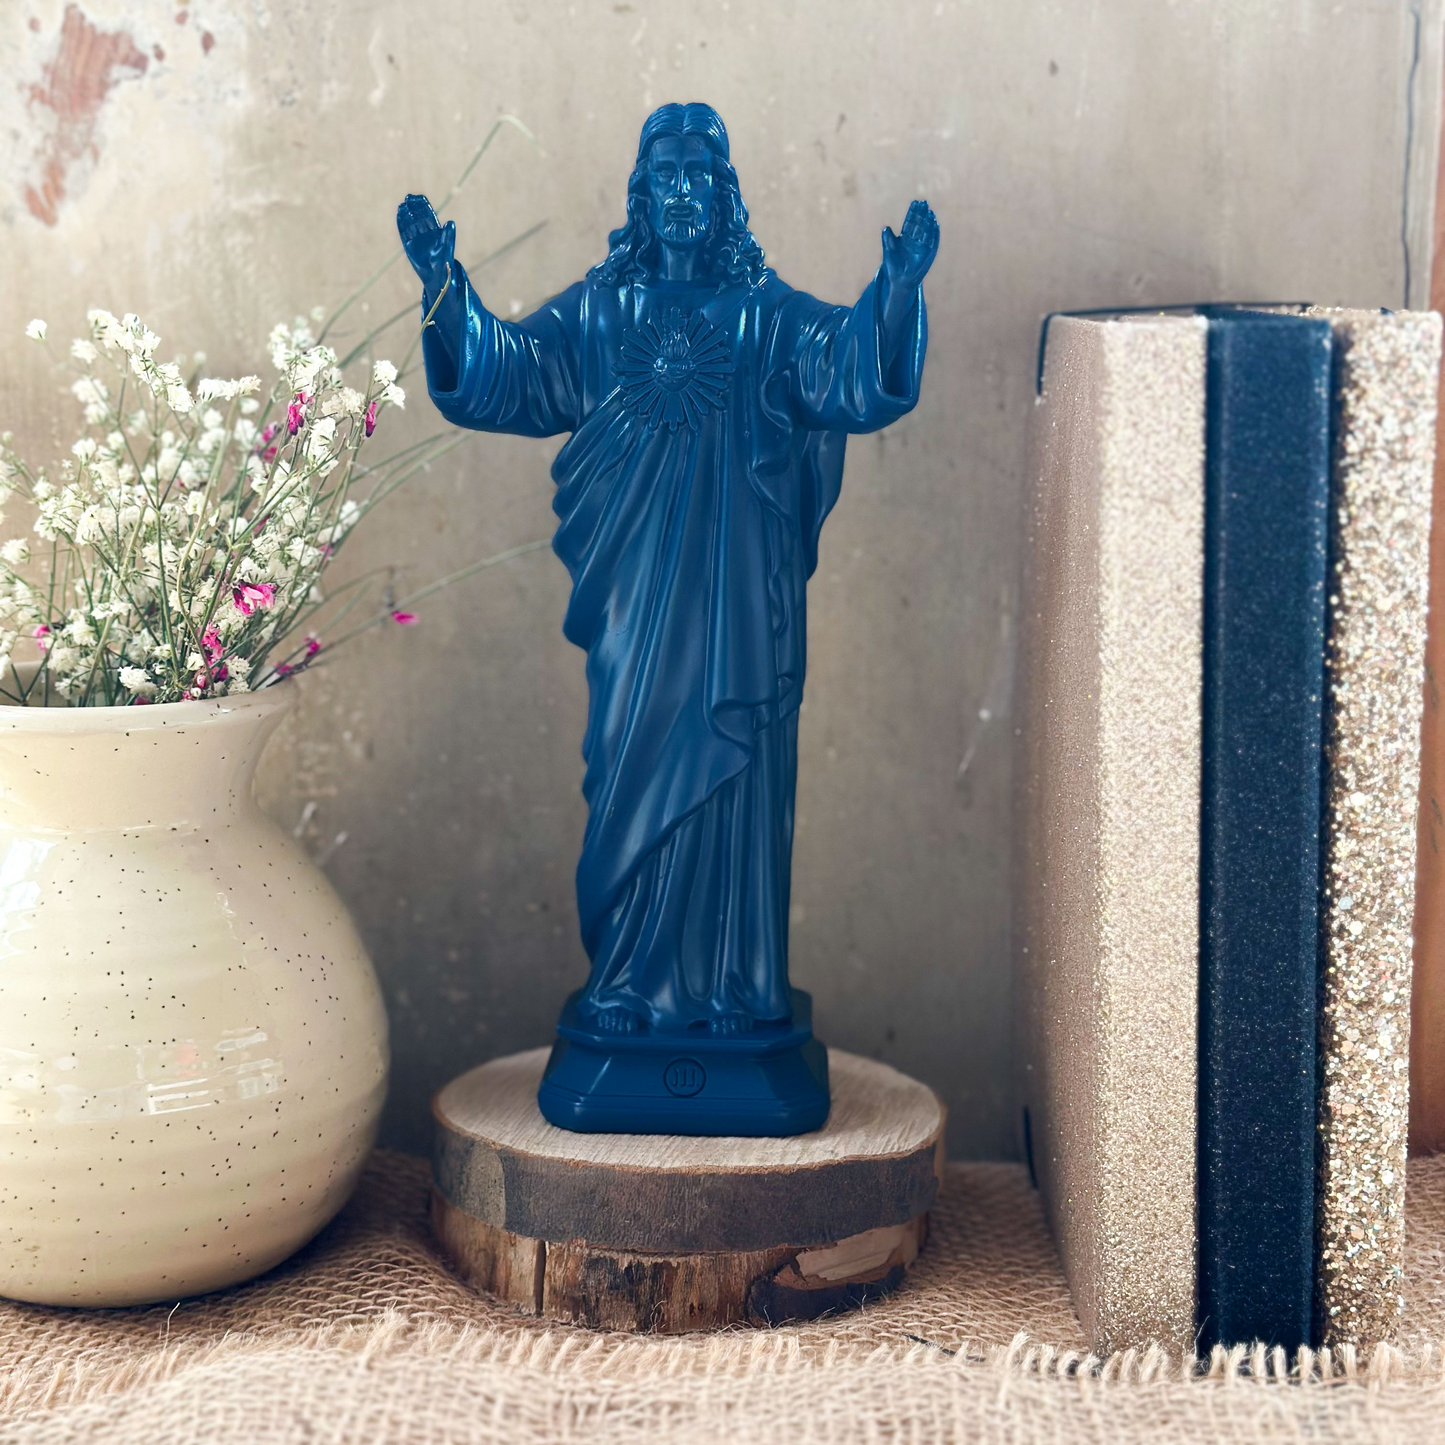 Statuette Jesus loves you - couleurs intemporelles bleu tornade